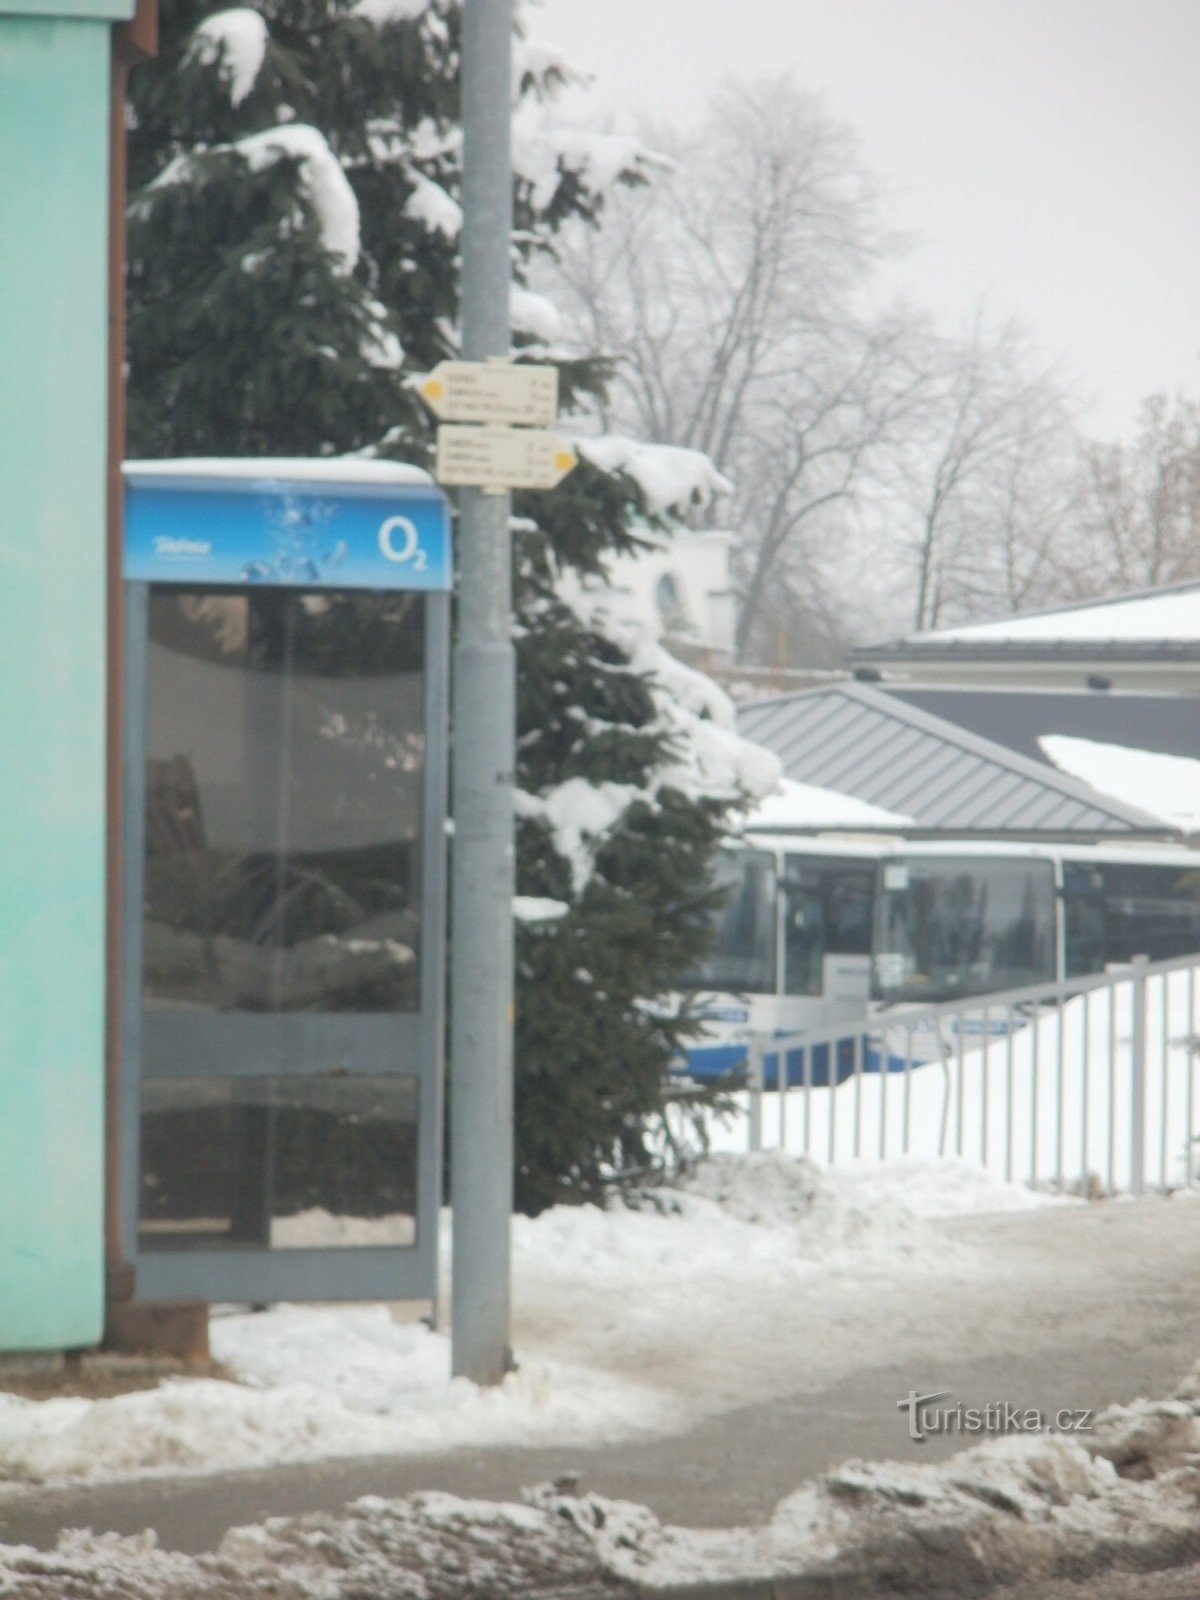 encrucijada turística Žamberk - en la estación de autobuses